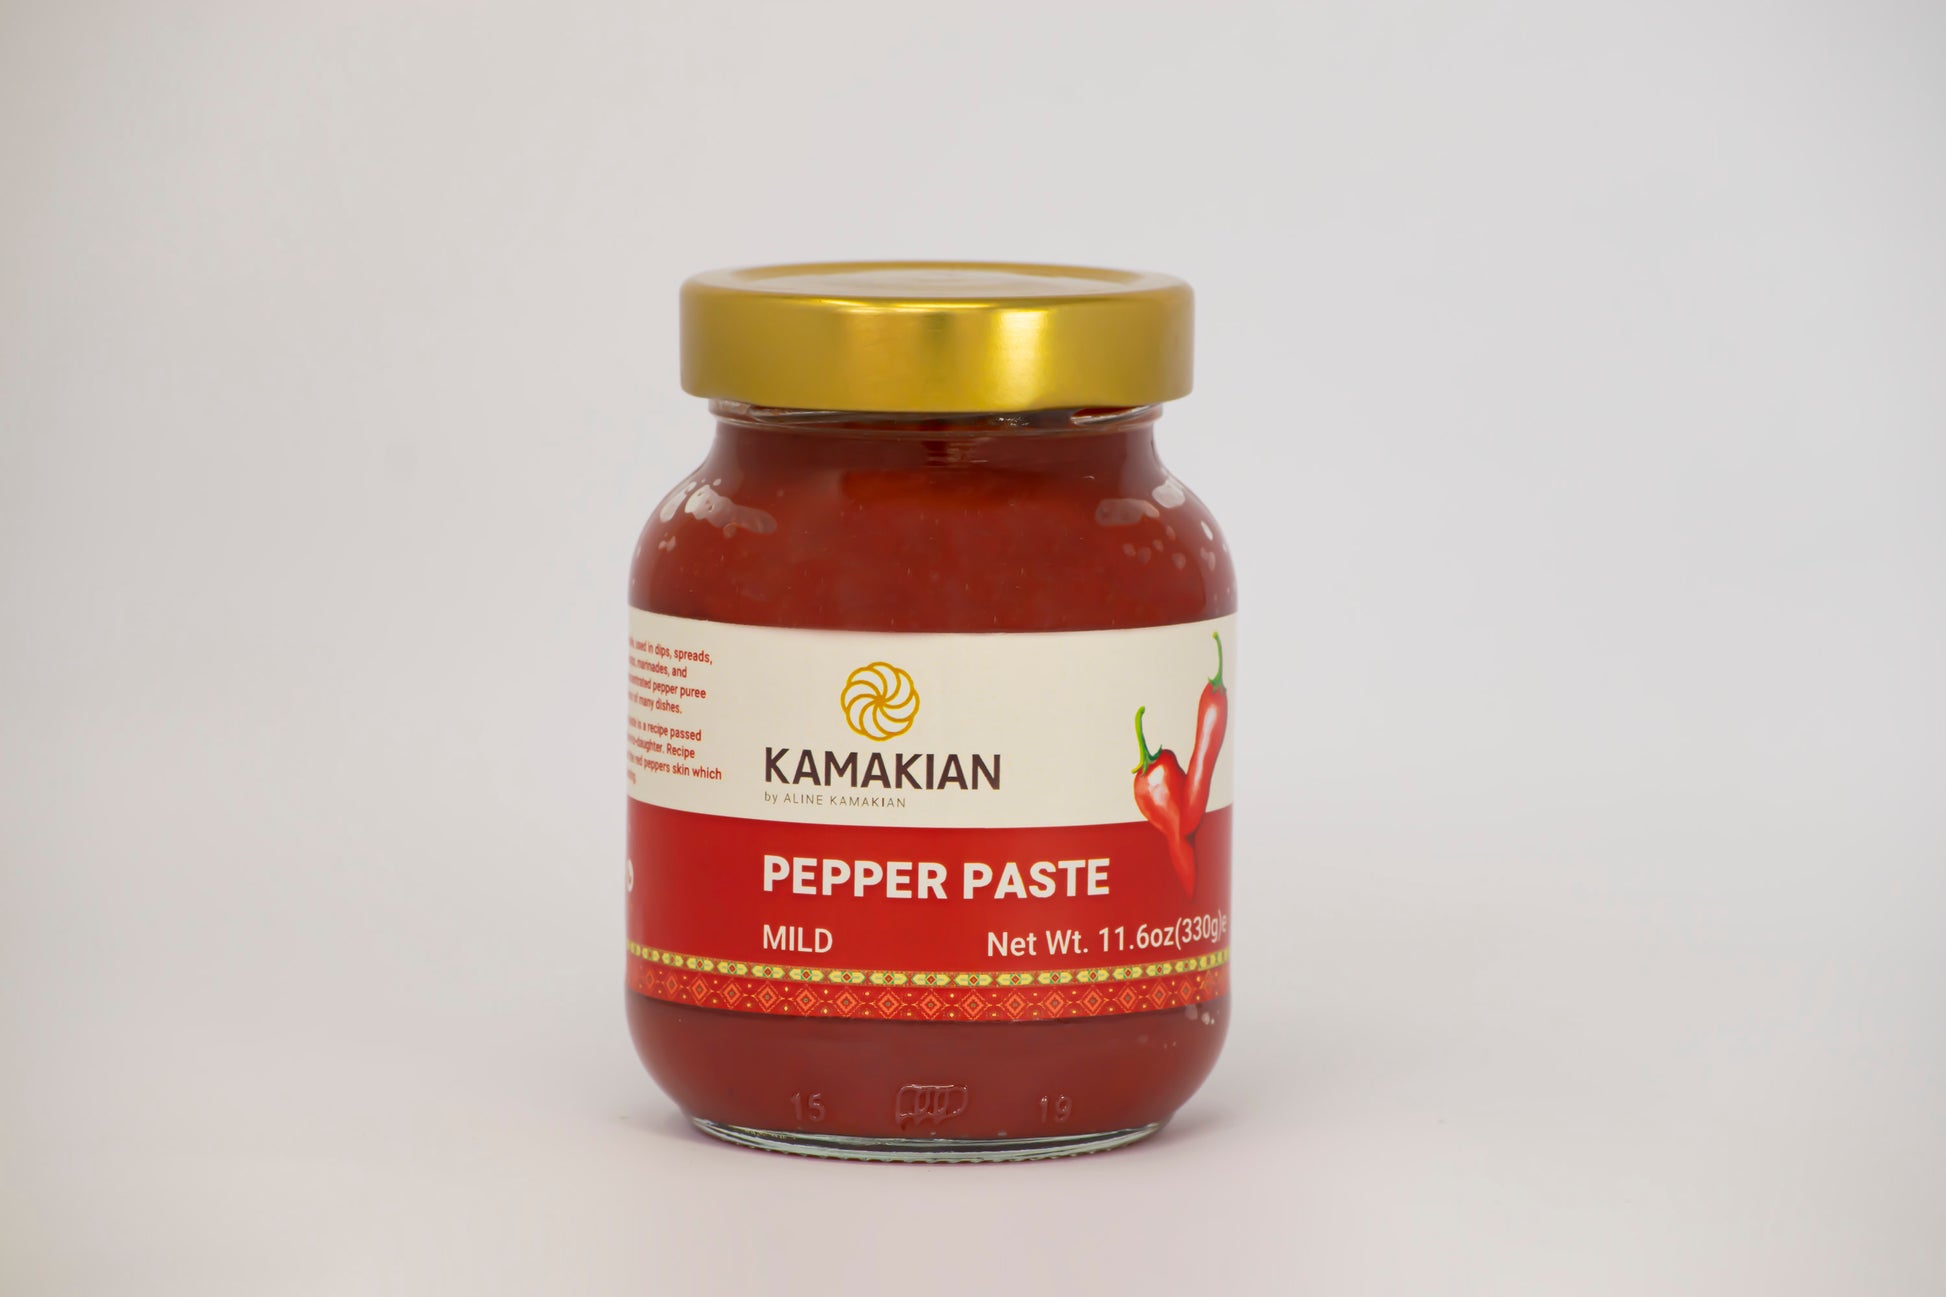 Armenian Pepper Paste made in Lebanon